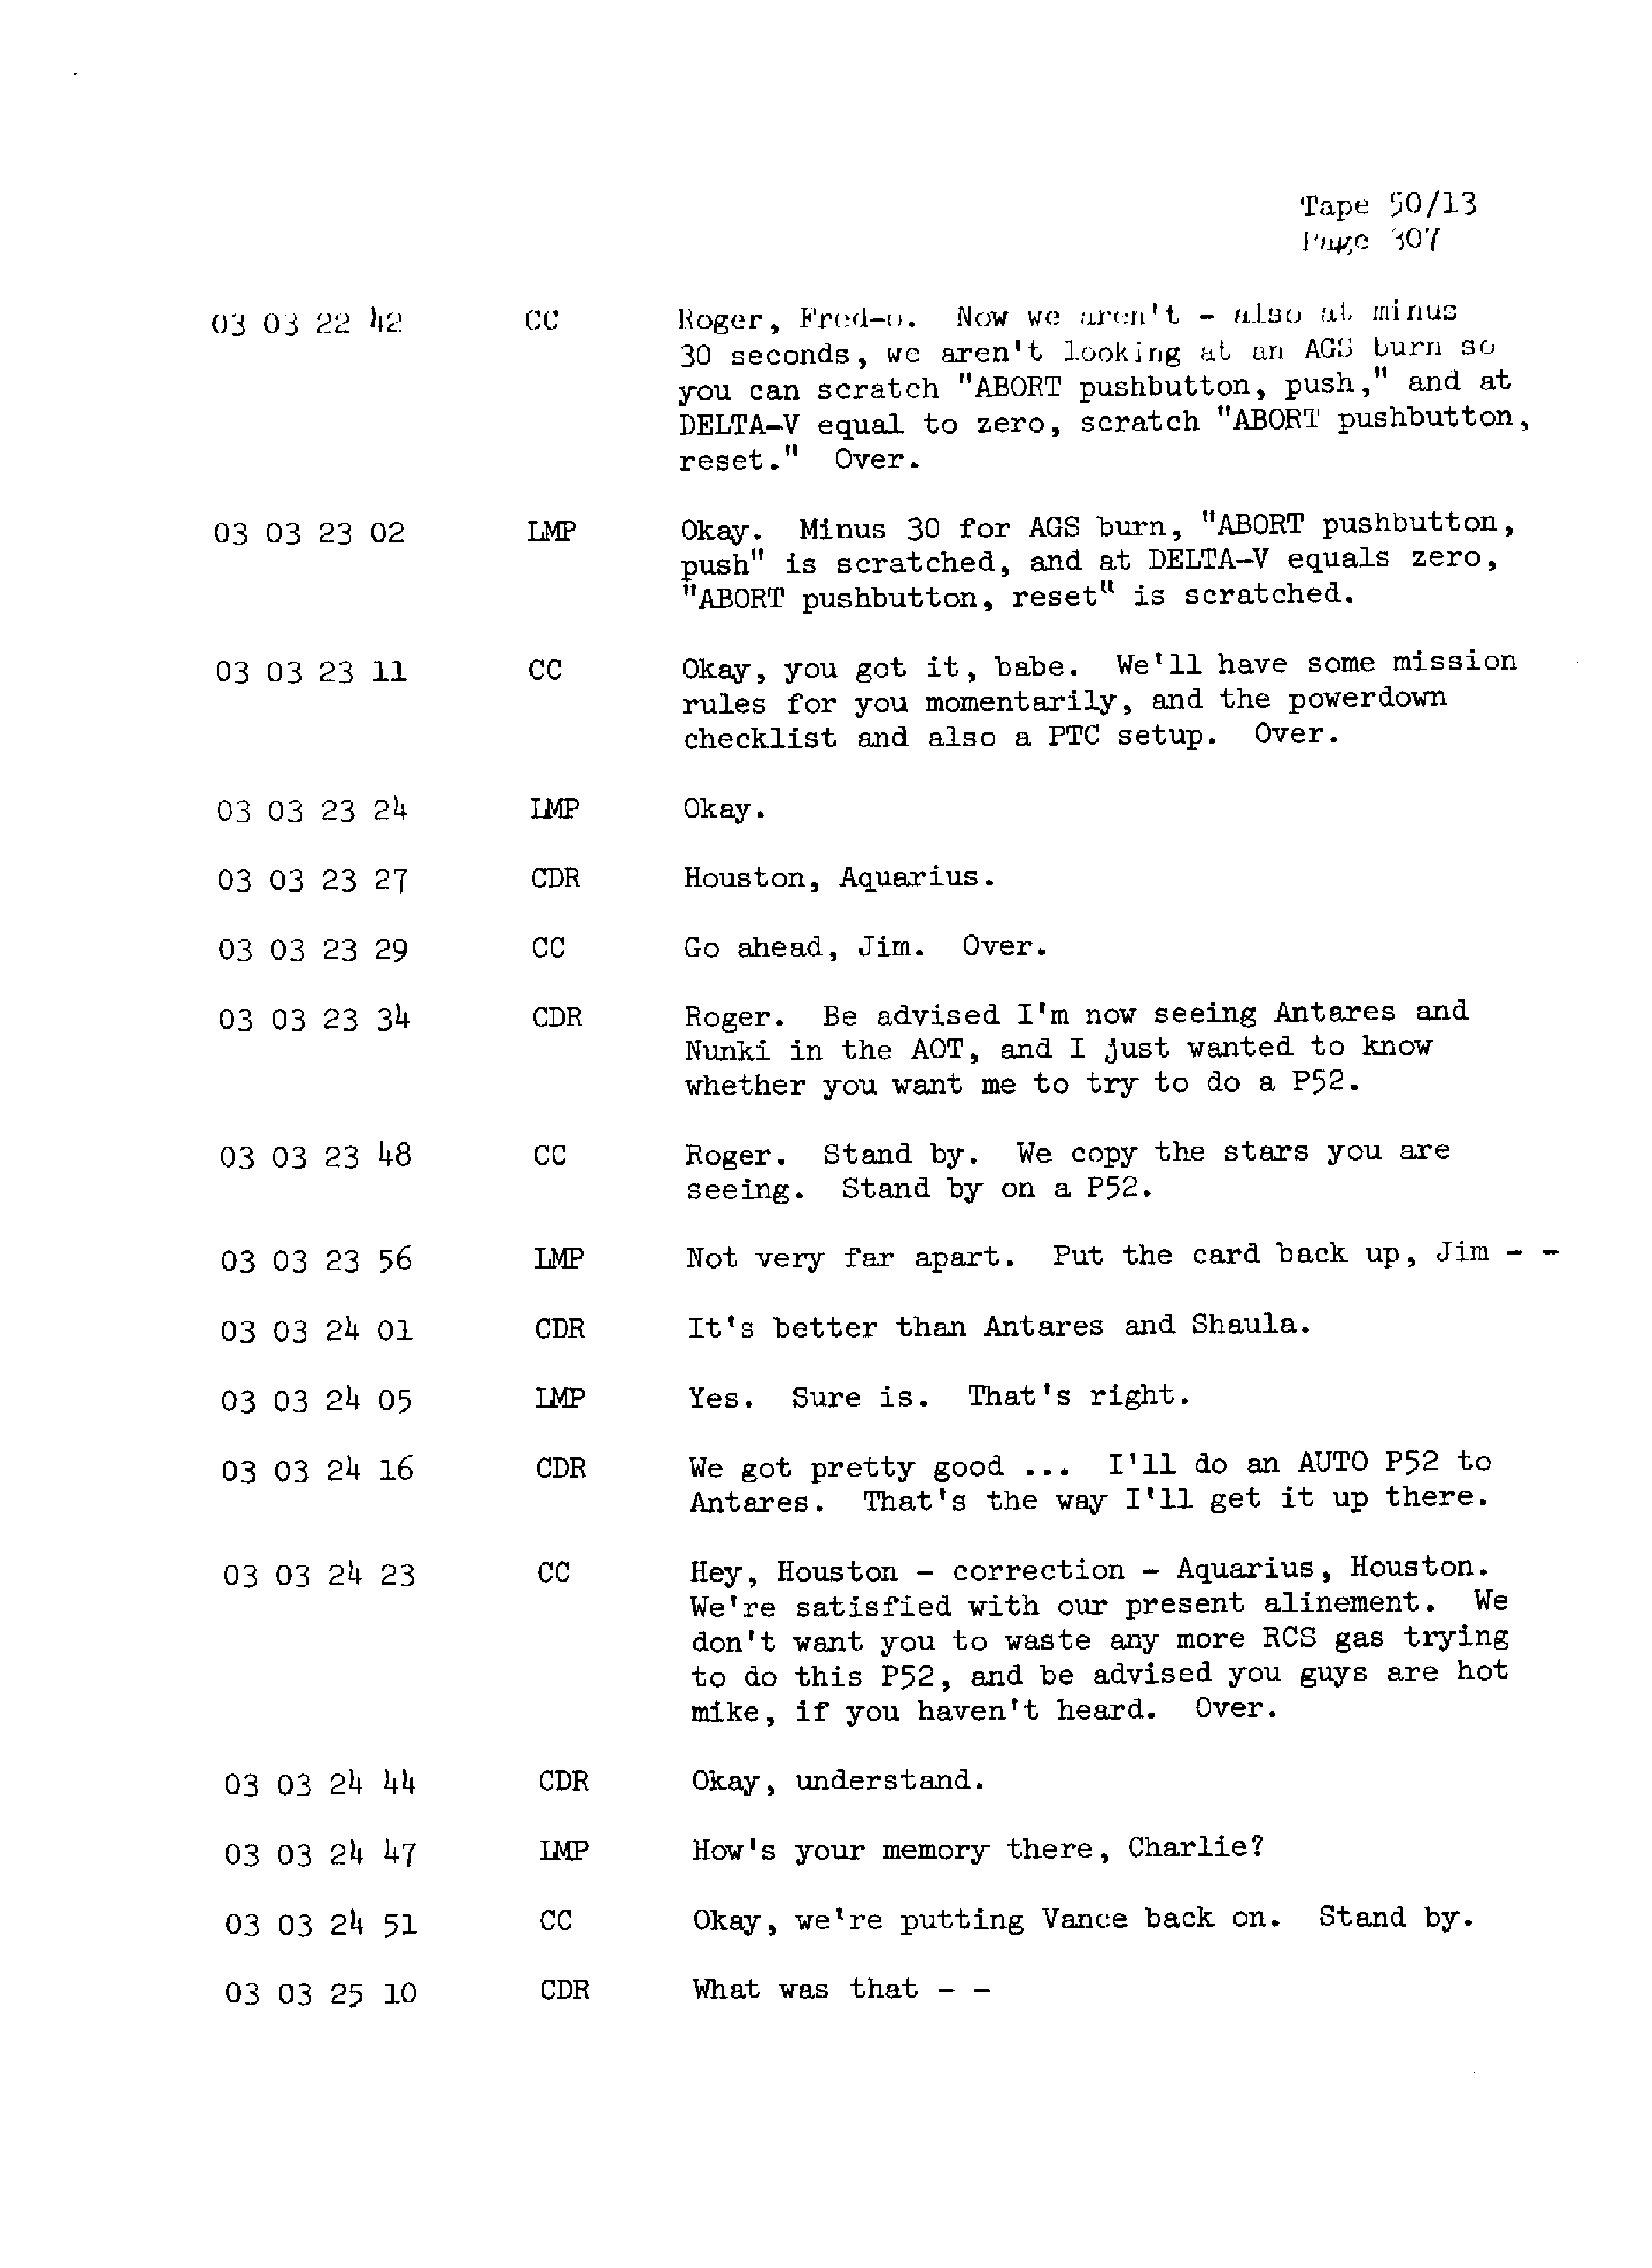 Page 314 of Apollo 13’s original transcript